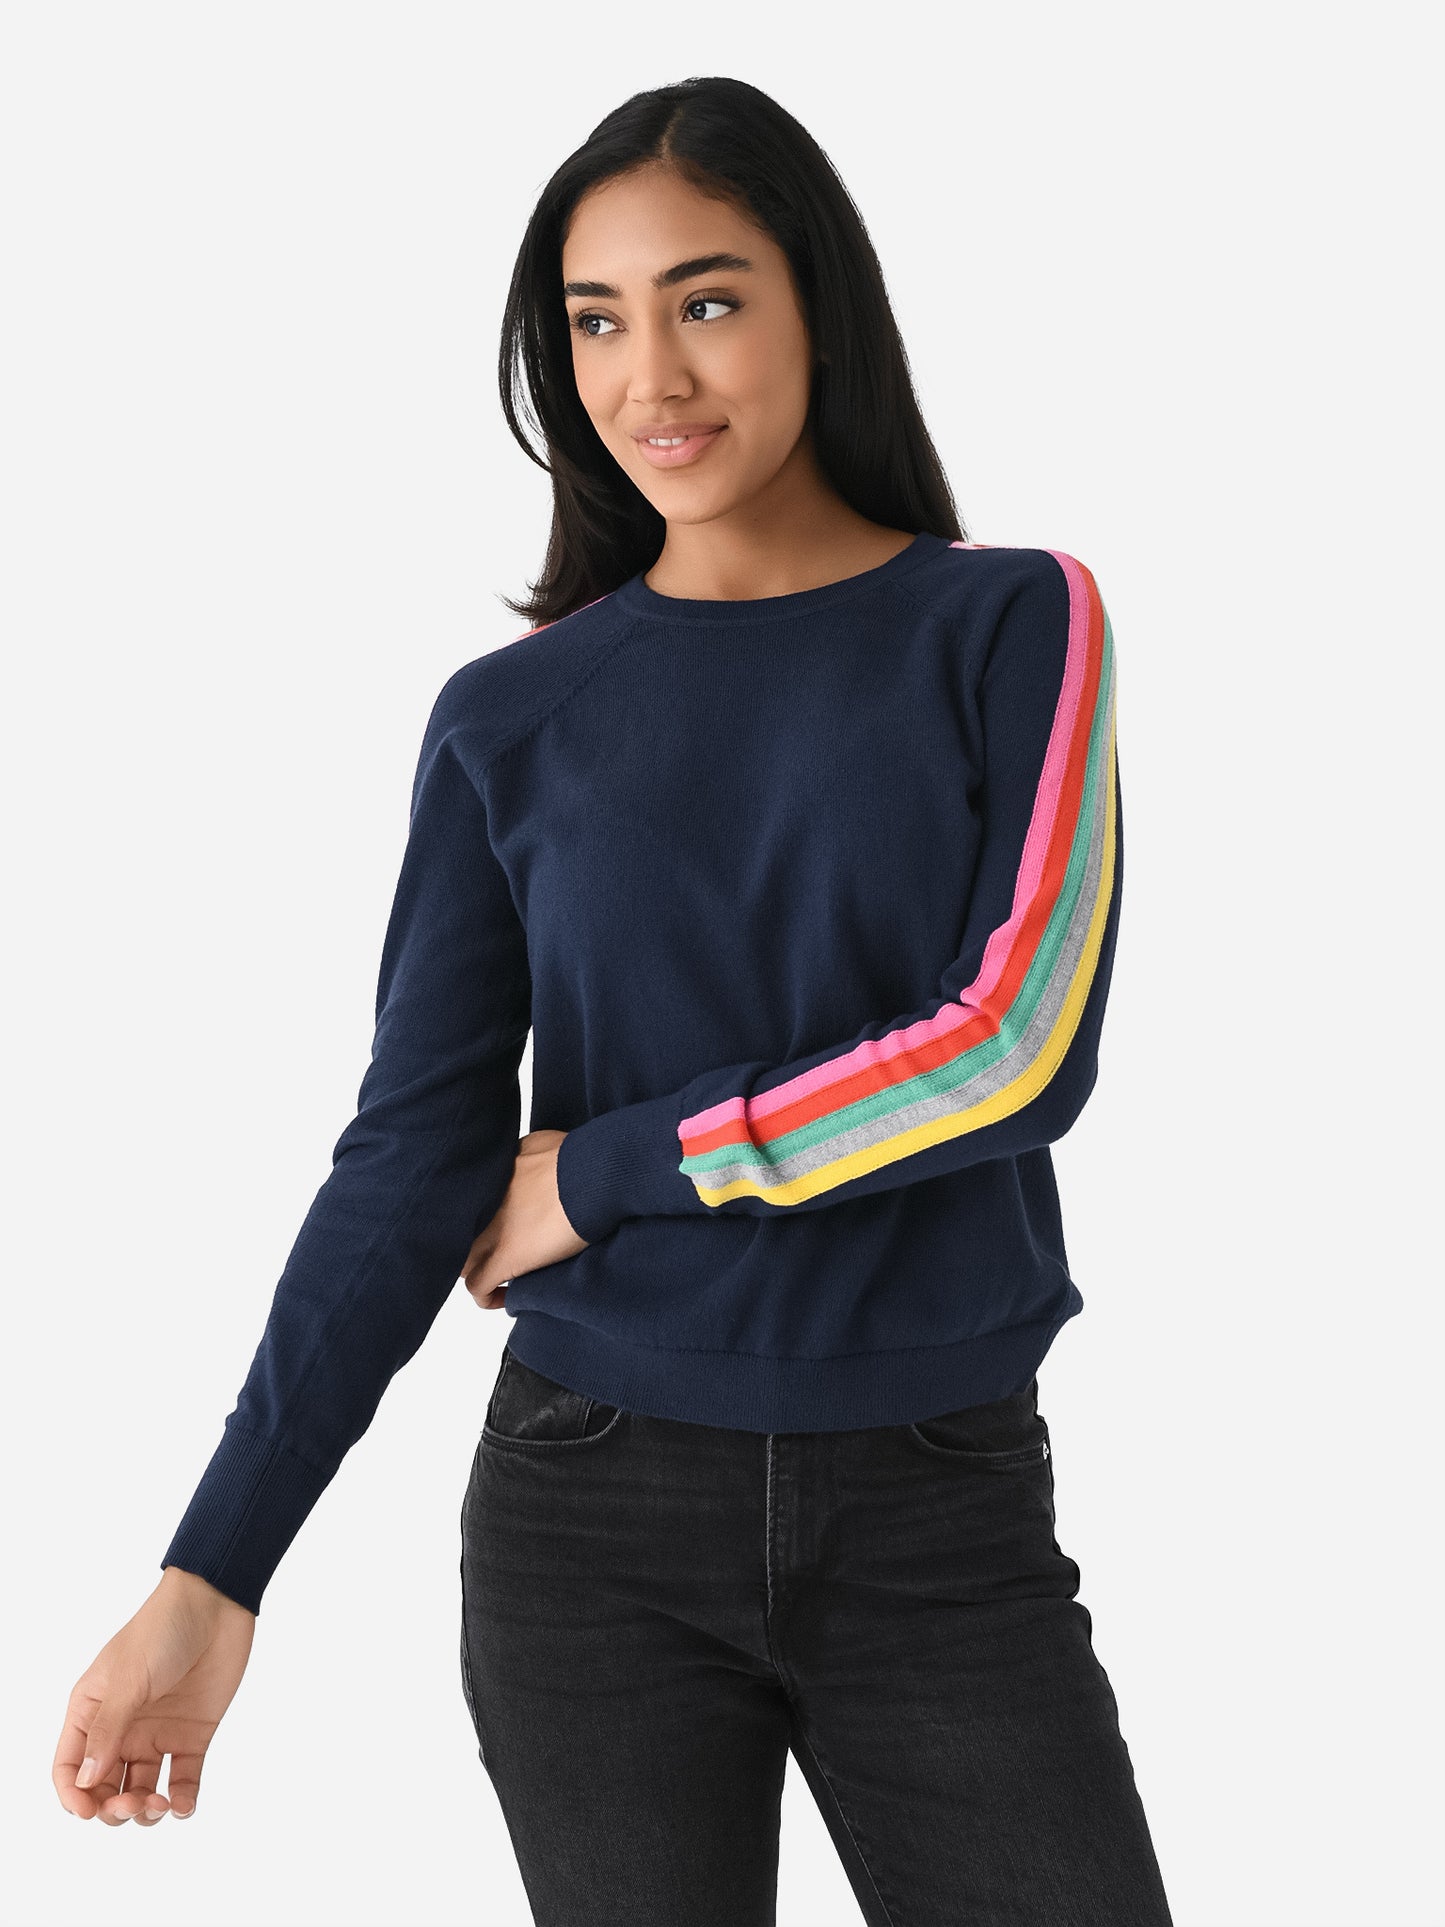 J Society Women's Stripe Sleeve Sweater